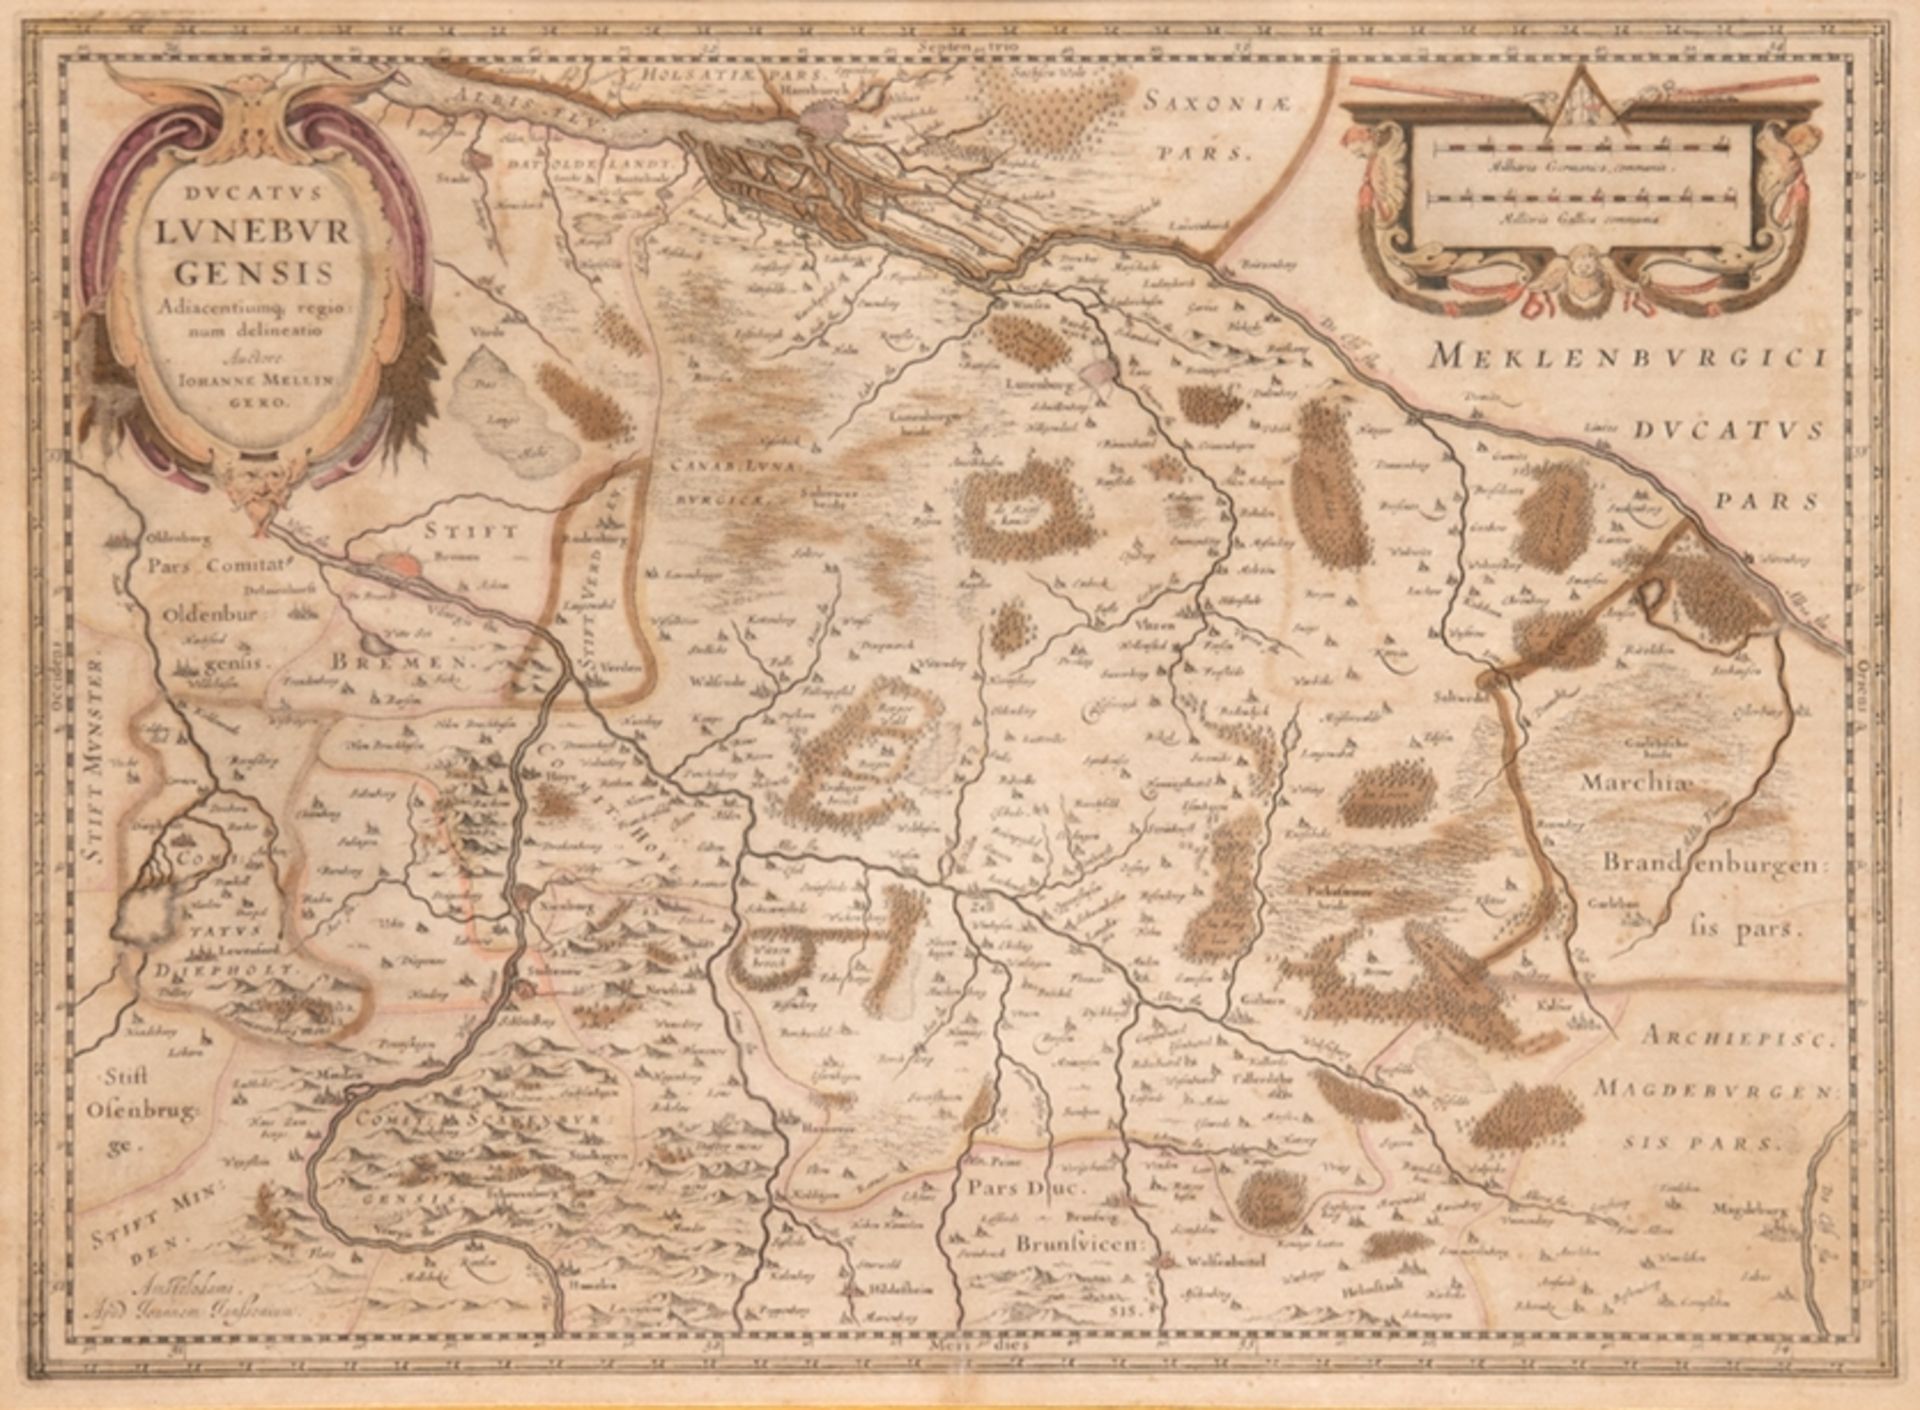 Karte "Ducatus Luneburgensis Adiacentiumq-Lüneburg", Kupferstich nach Johannes Mellinger, mit 2 Tit